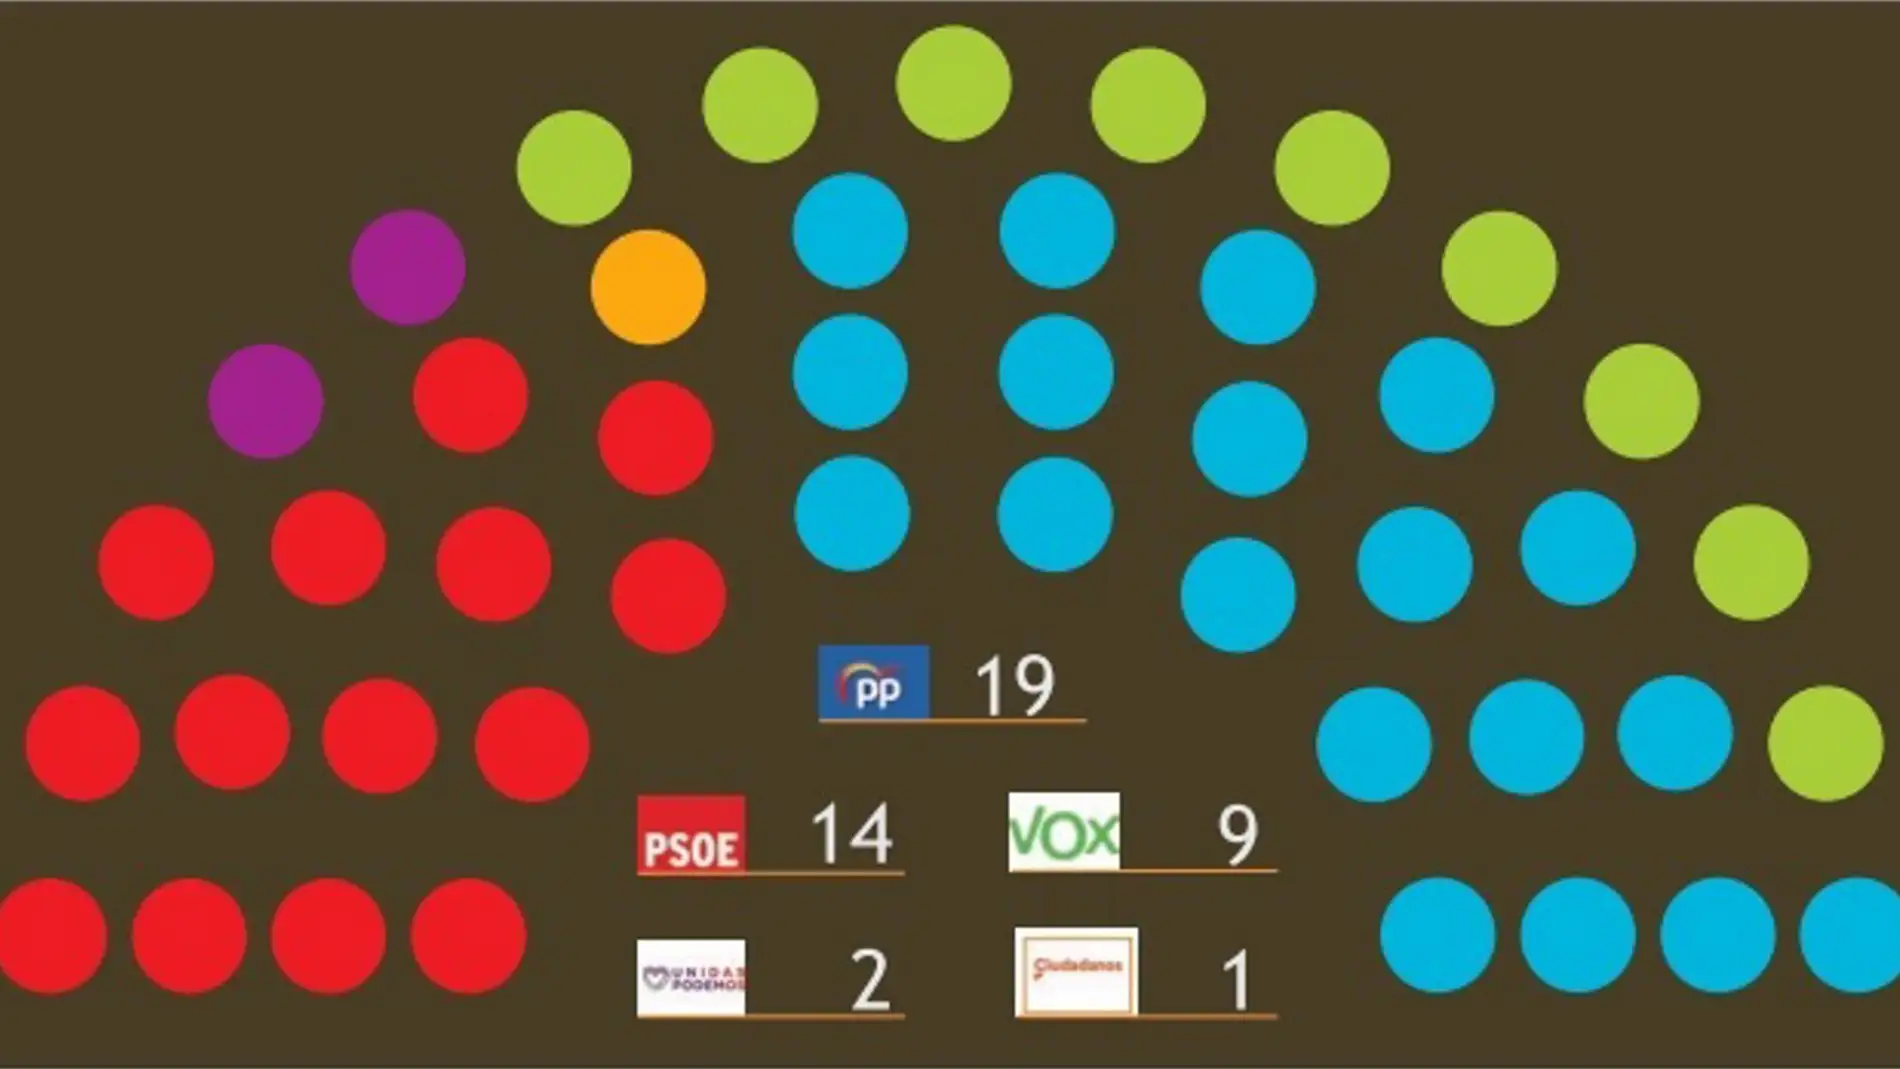 El PP ganaría las elecciones, pero seguiría necesitando a VOX para gobernar, según el barómetro del CEMOP